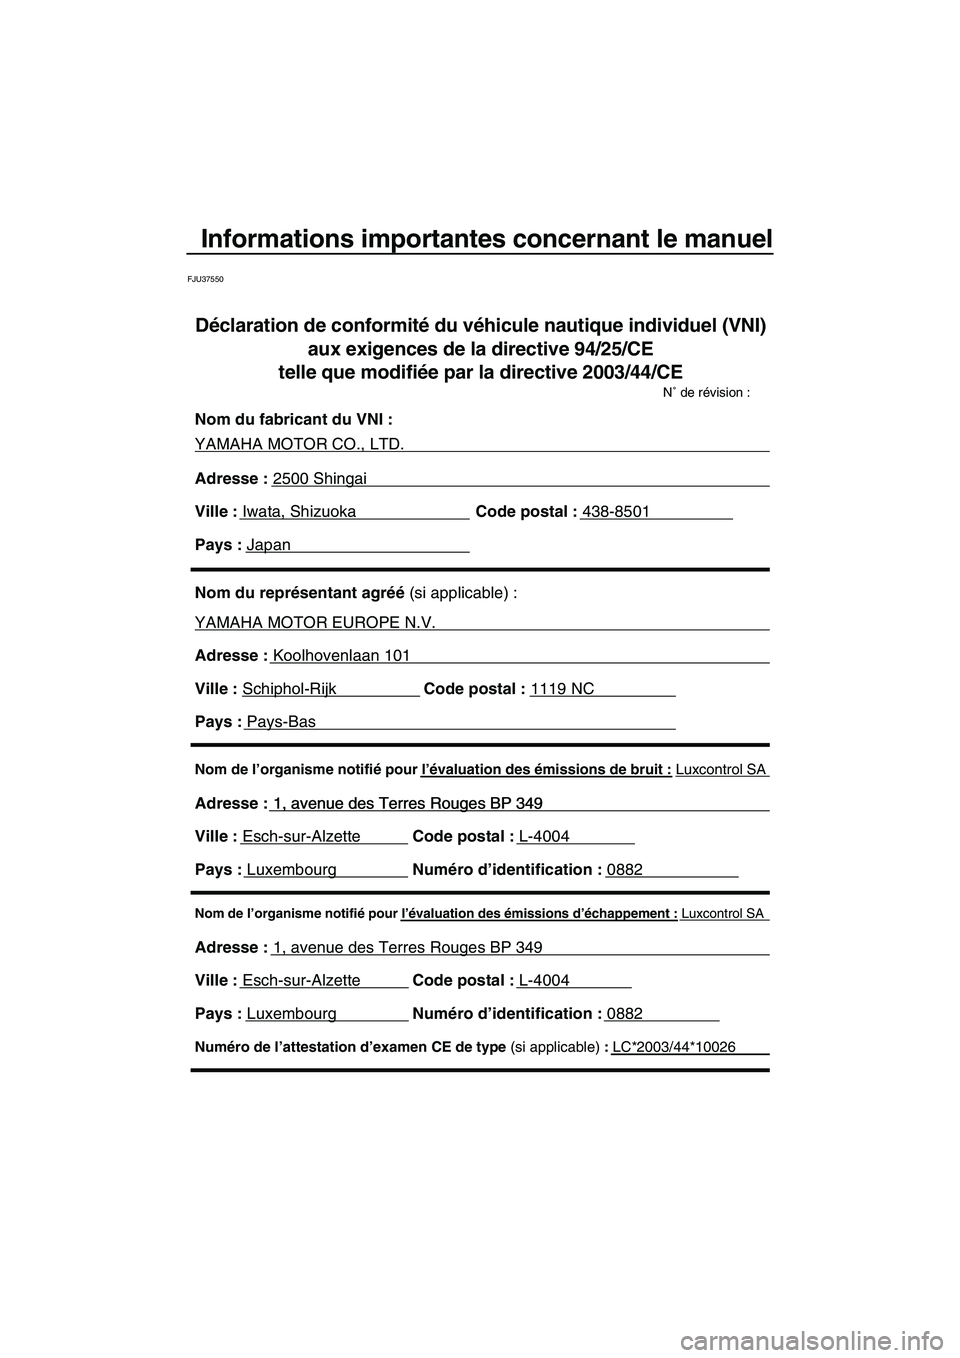 YAMAHA FZR 2009  Notices Demploi (in French) Informations importantes concernant le manuel
FJU37550
Nom de l’organisme notifié pour l’évaluation des émissions d’échappement : Luxcontrol SA
Adresse : 1, avenue des Terres Rouges BP 349 
